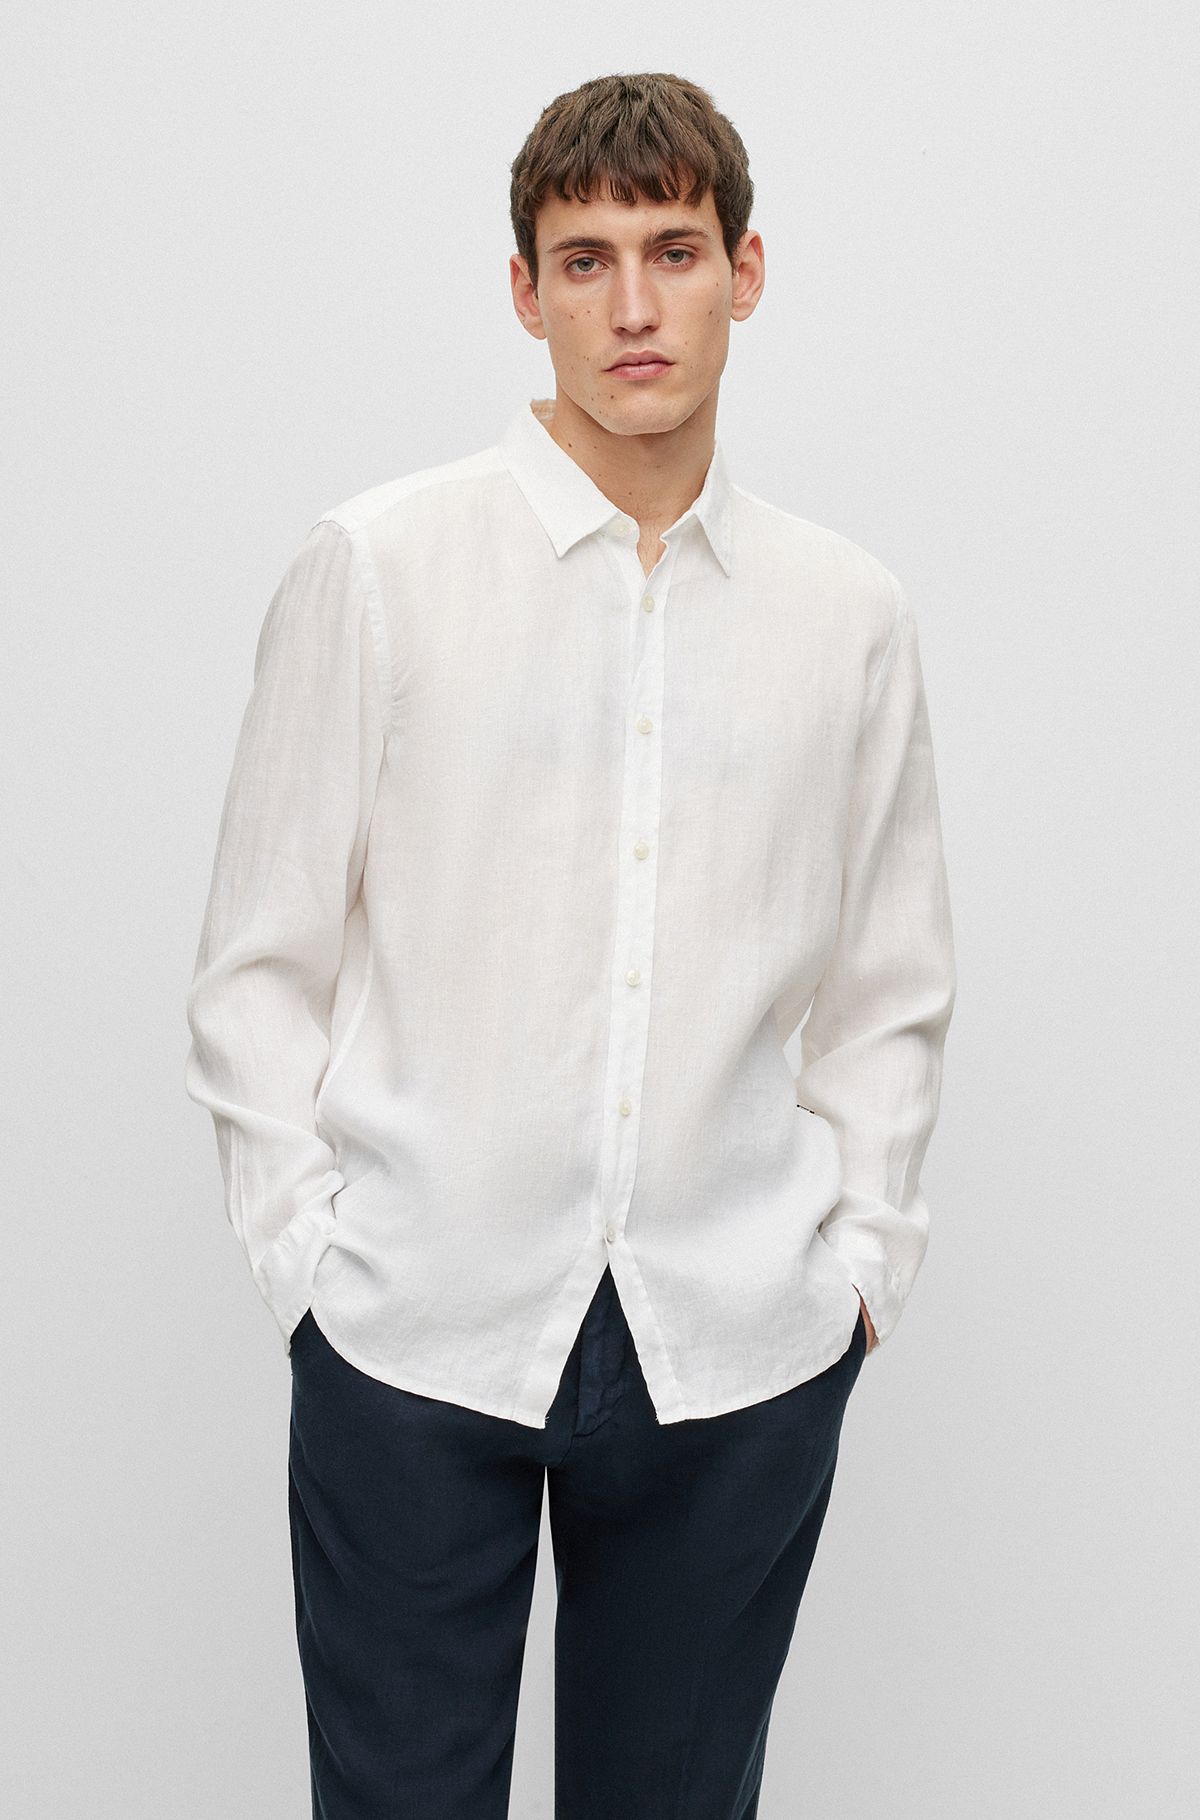 Regular-fit overhemd met lange mouwen in chambray van linnen, Wit